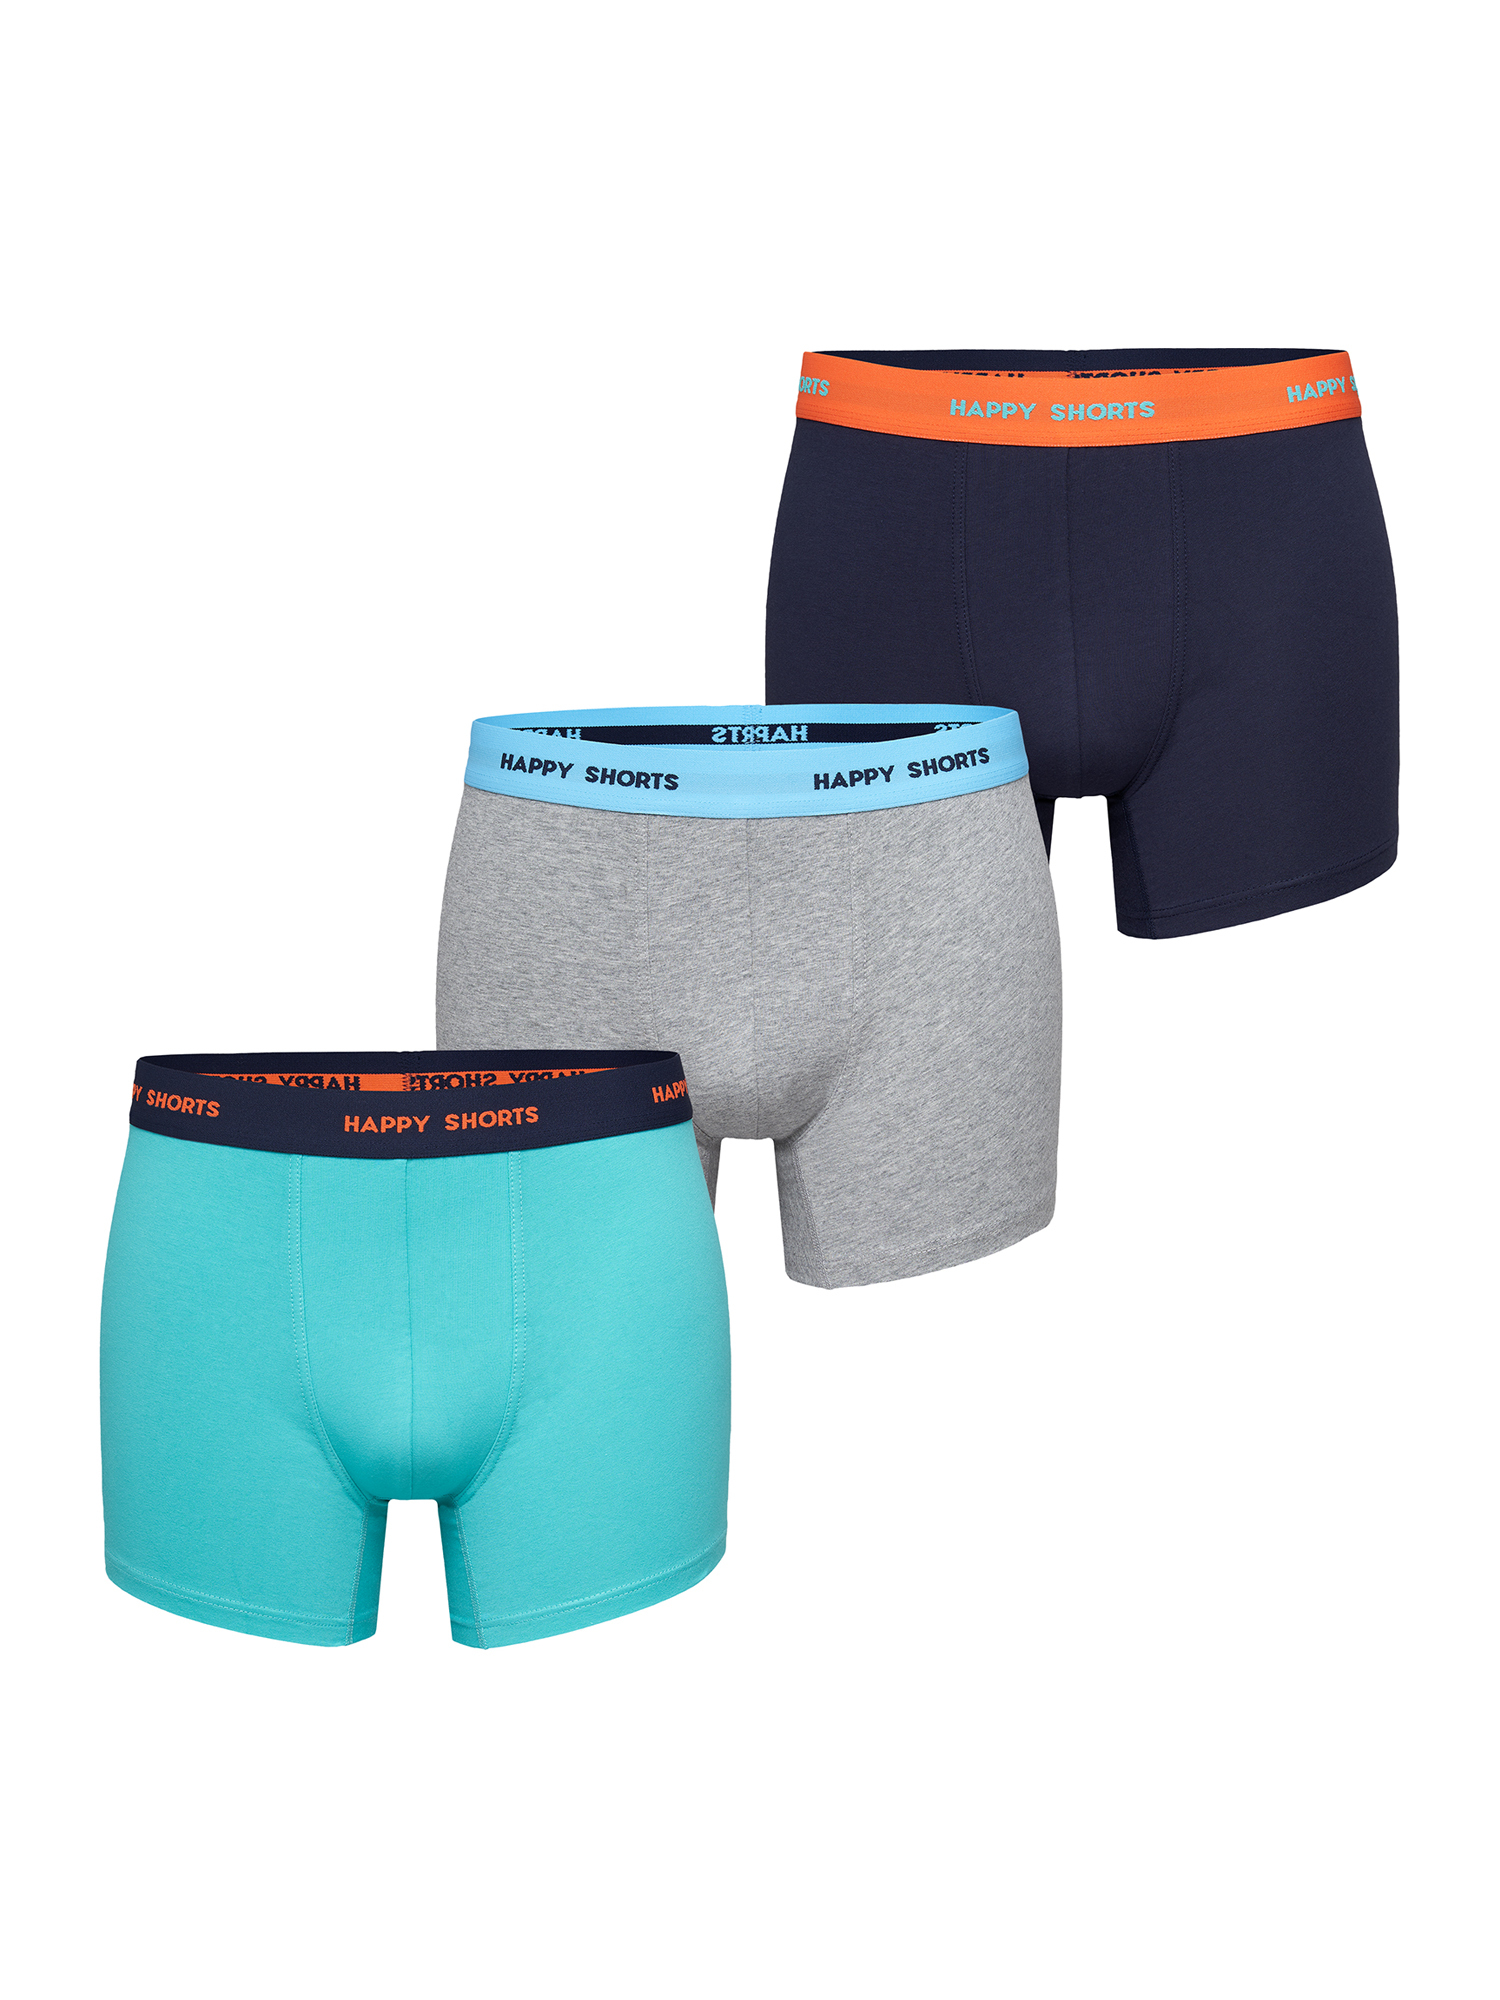 Боксеры Happy Shorts Retro Pants Motive, цвет orange-grey-turquise боксеры happy shorts retro pants motive цвет easter